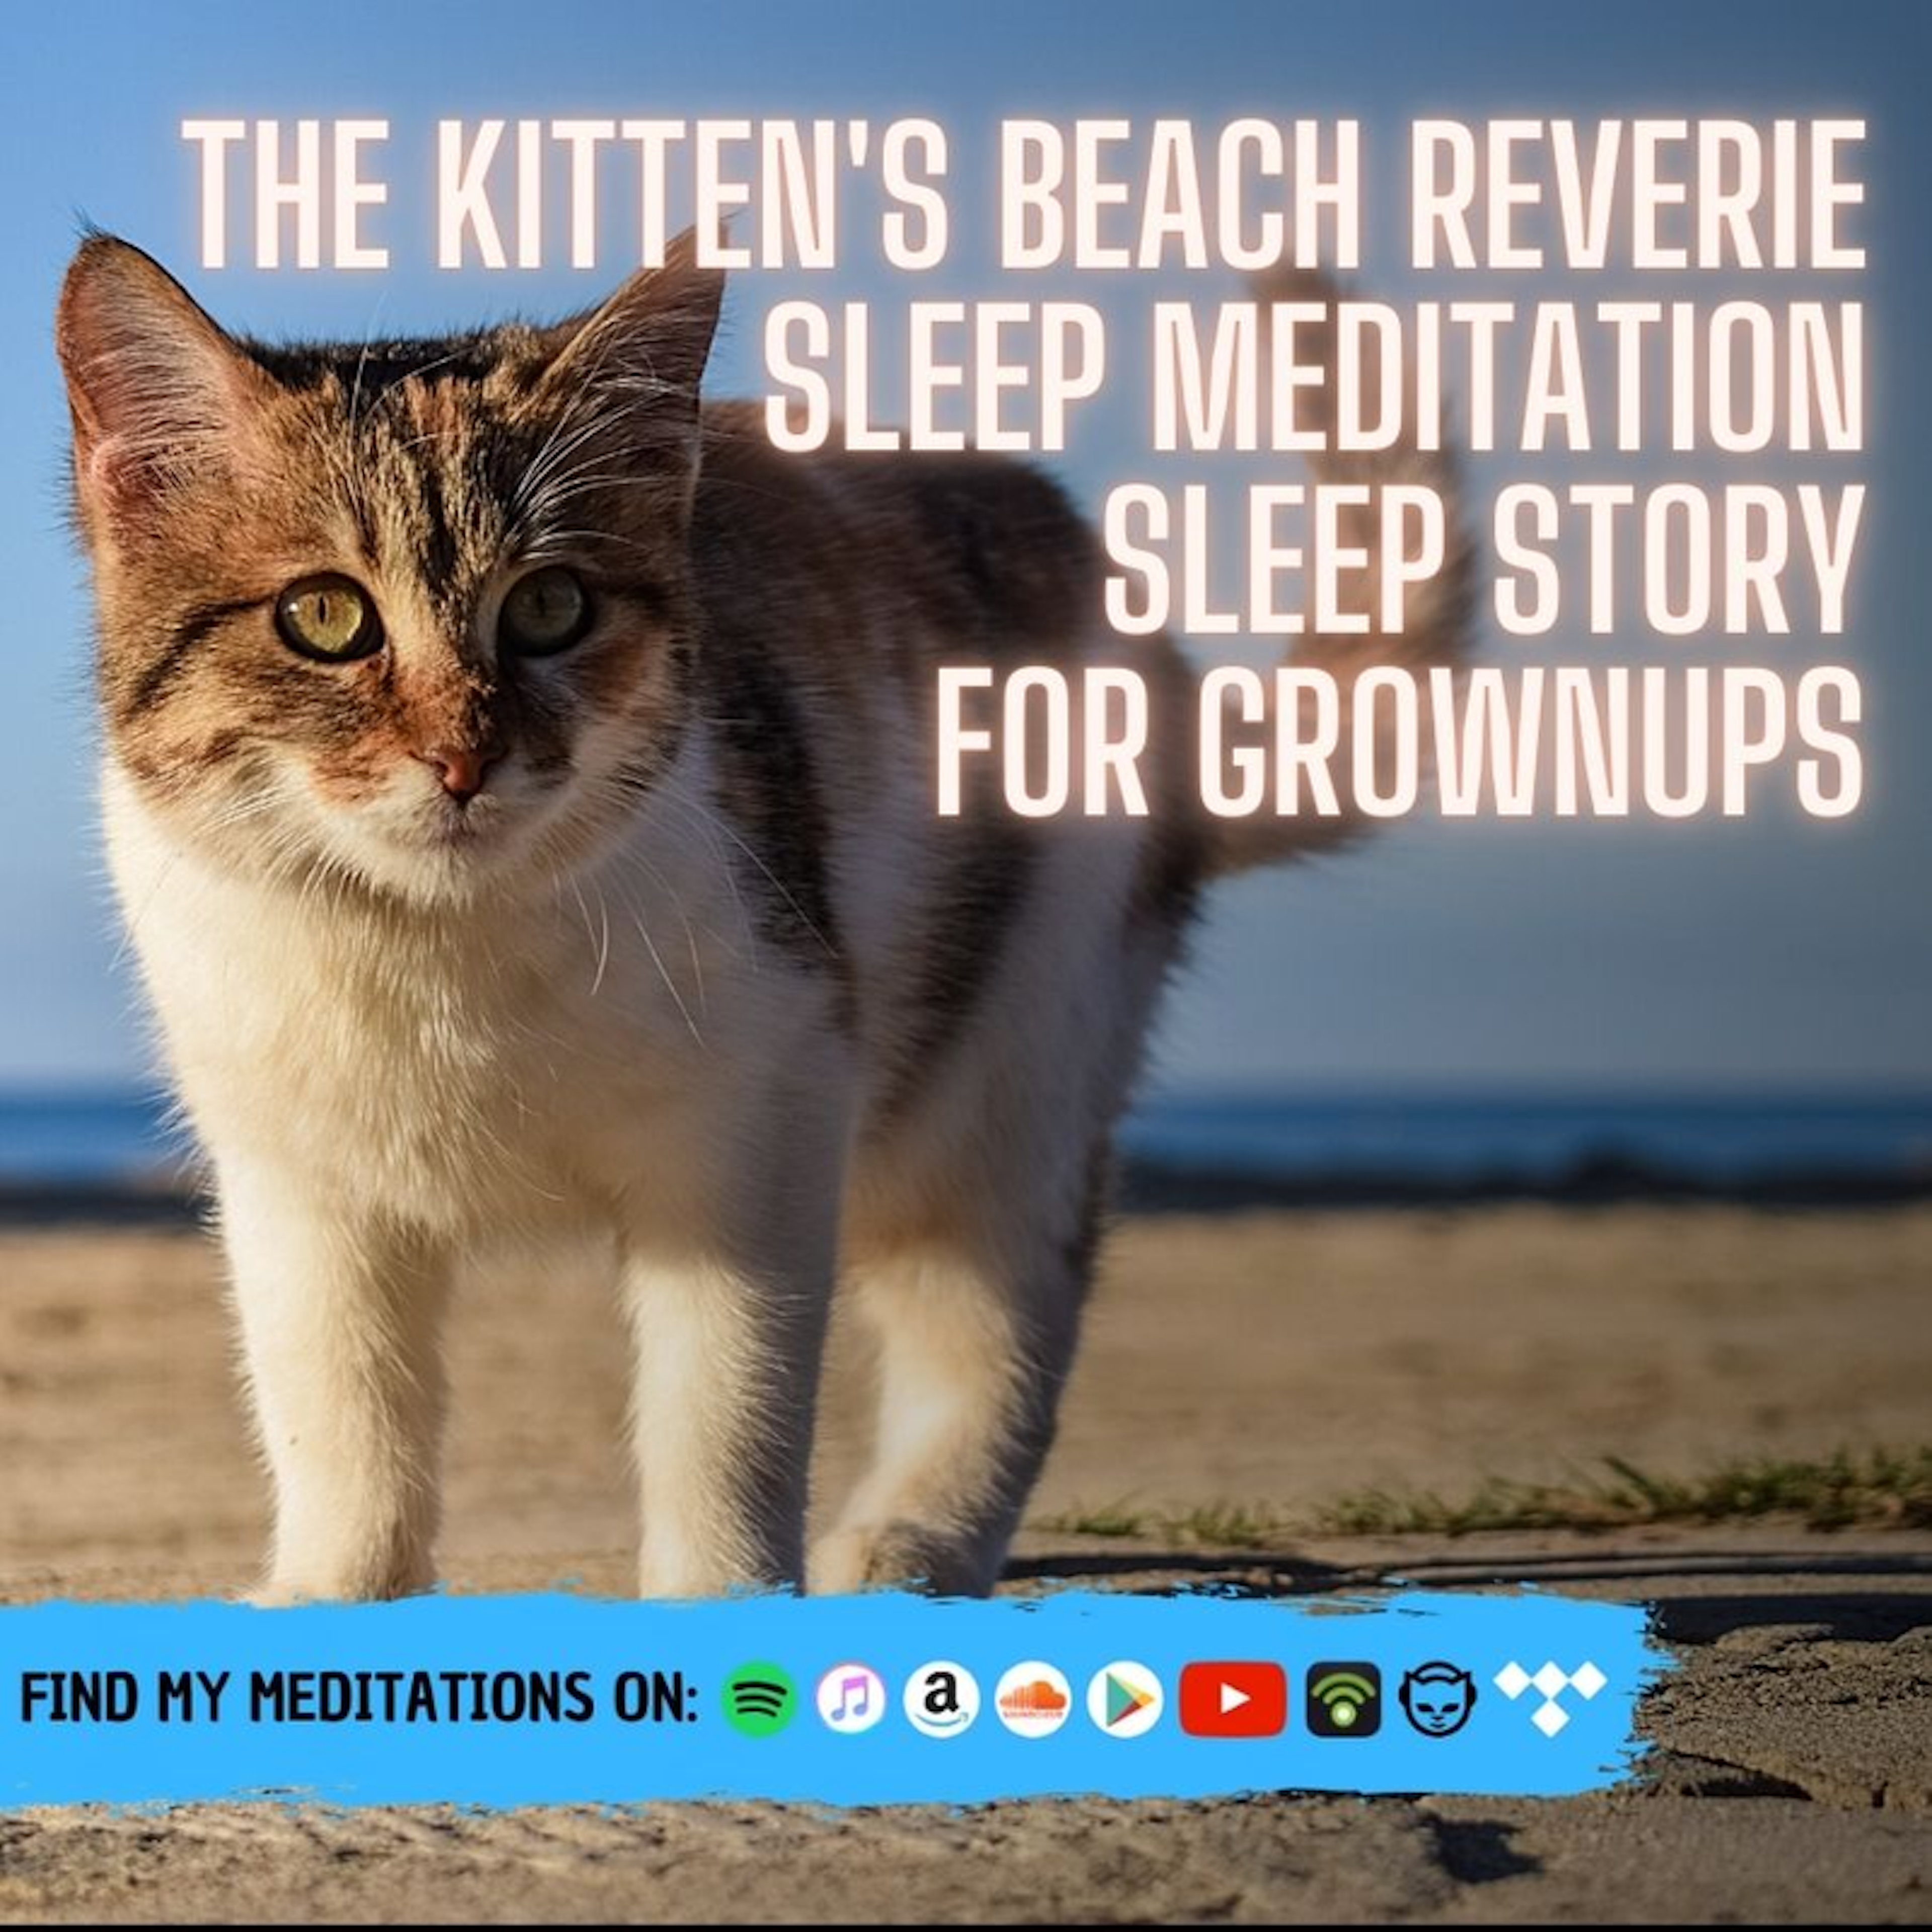 The Kitten's Beach Reverie